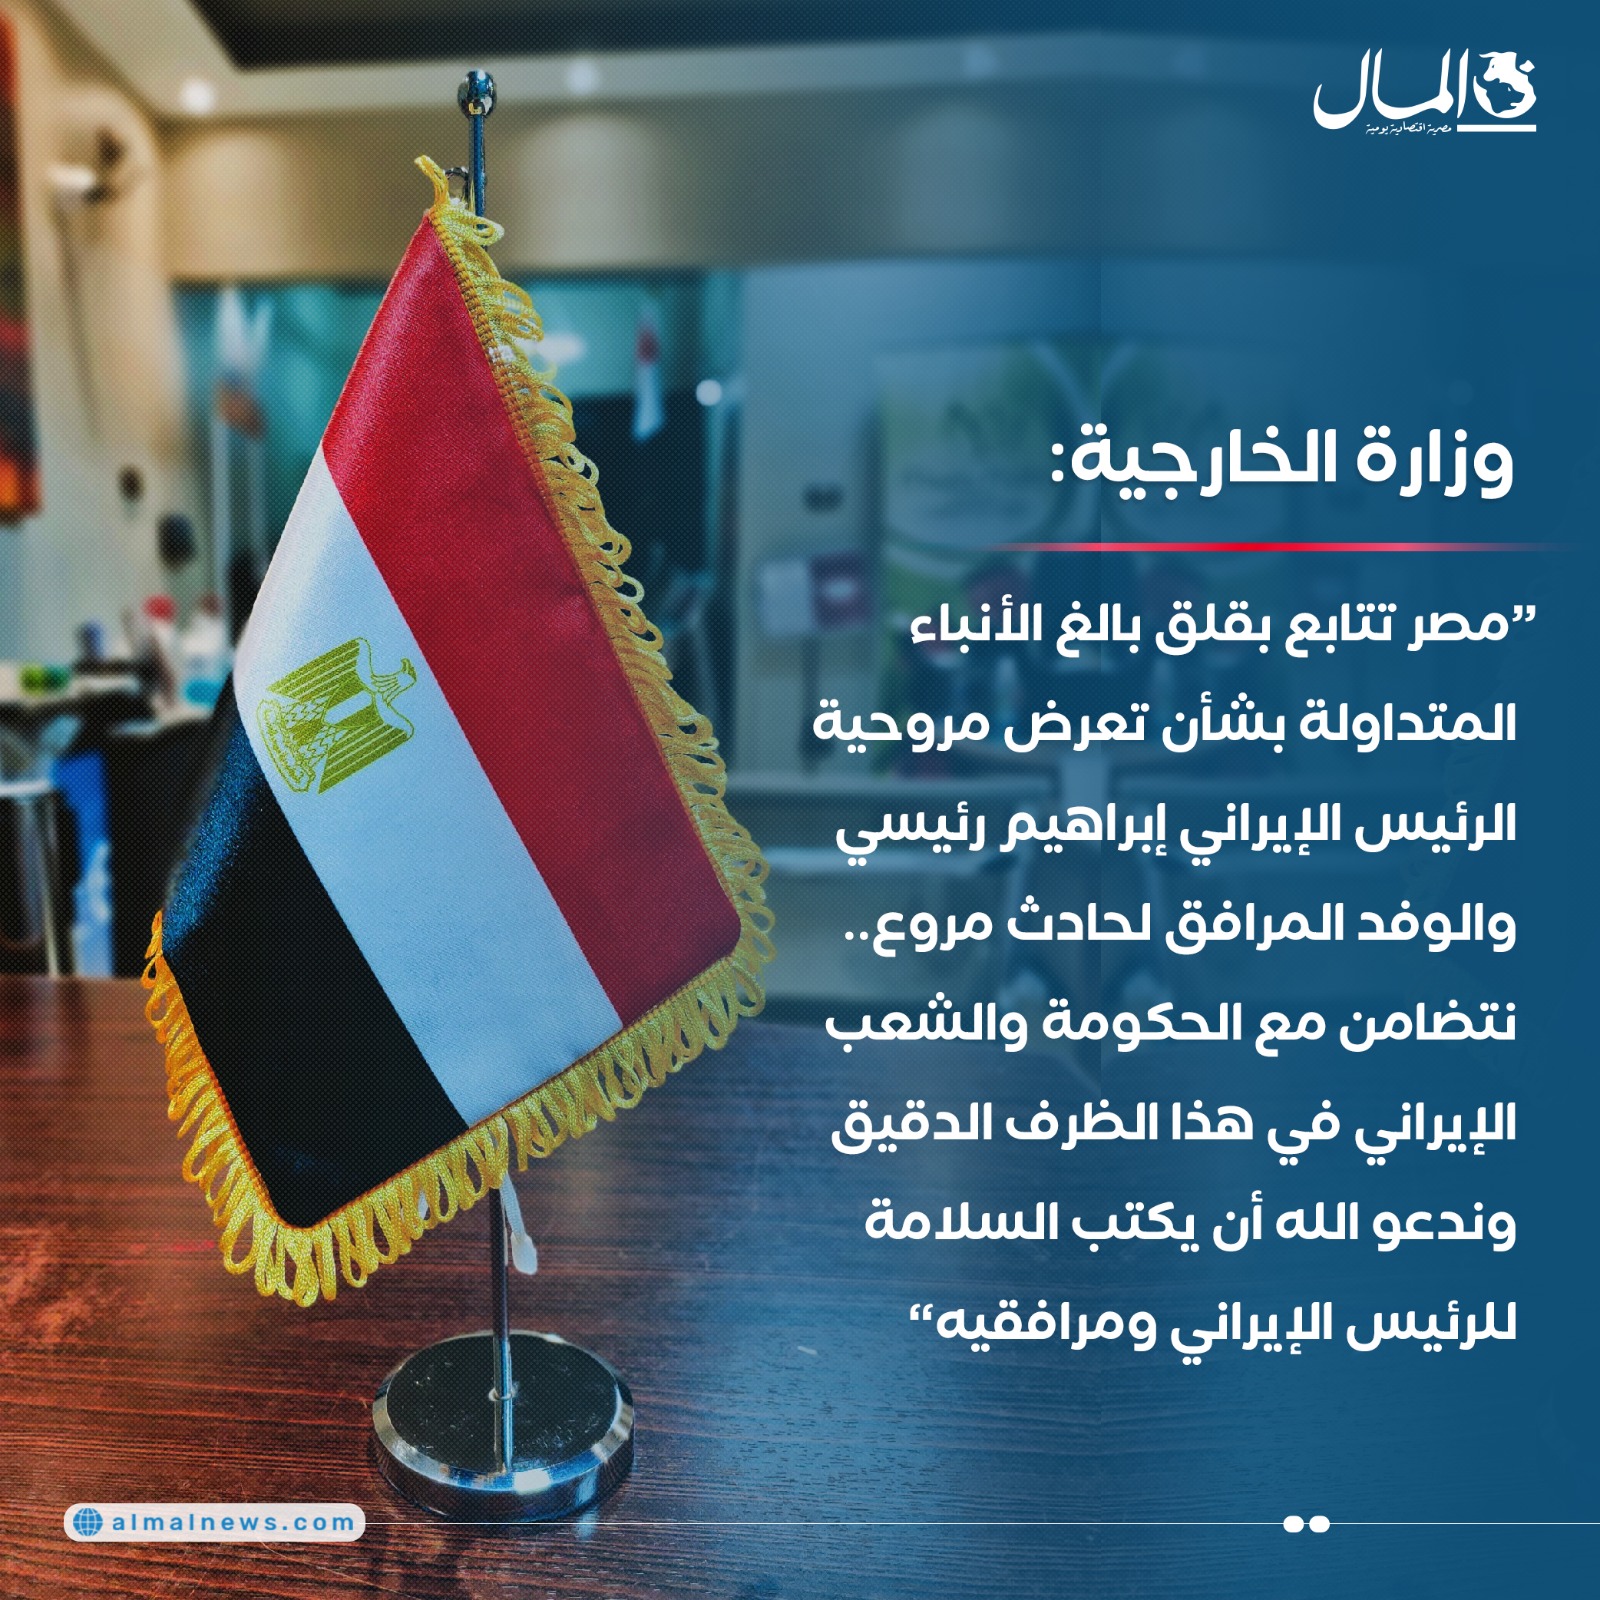 وزارة الخارجية: مصر تتضامن مع الحكومة والشعب الإيراني في هذا الظرف الدقيق 